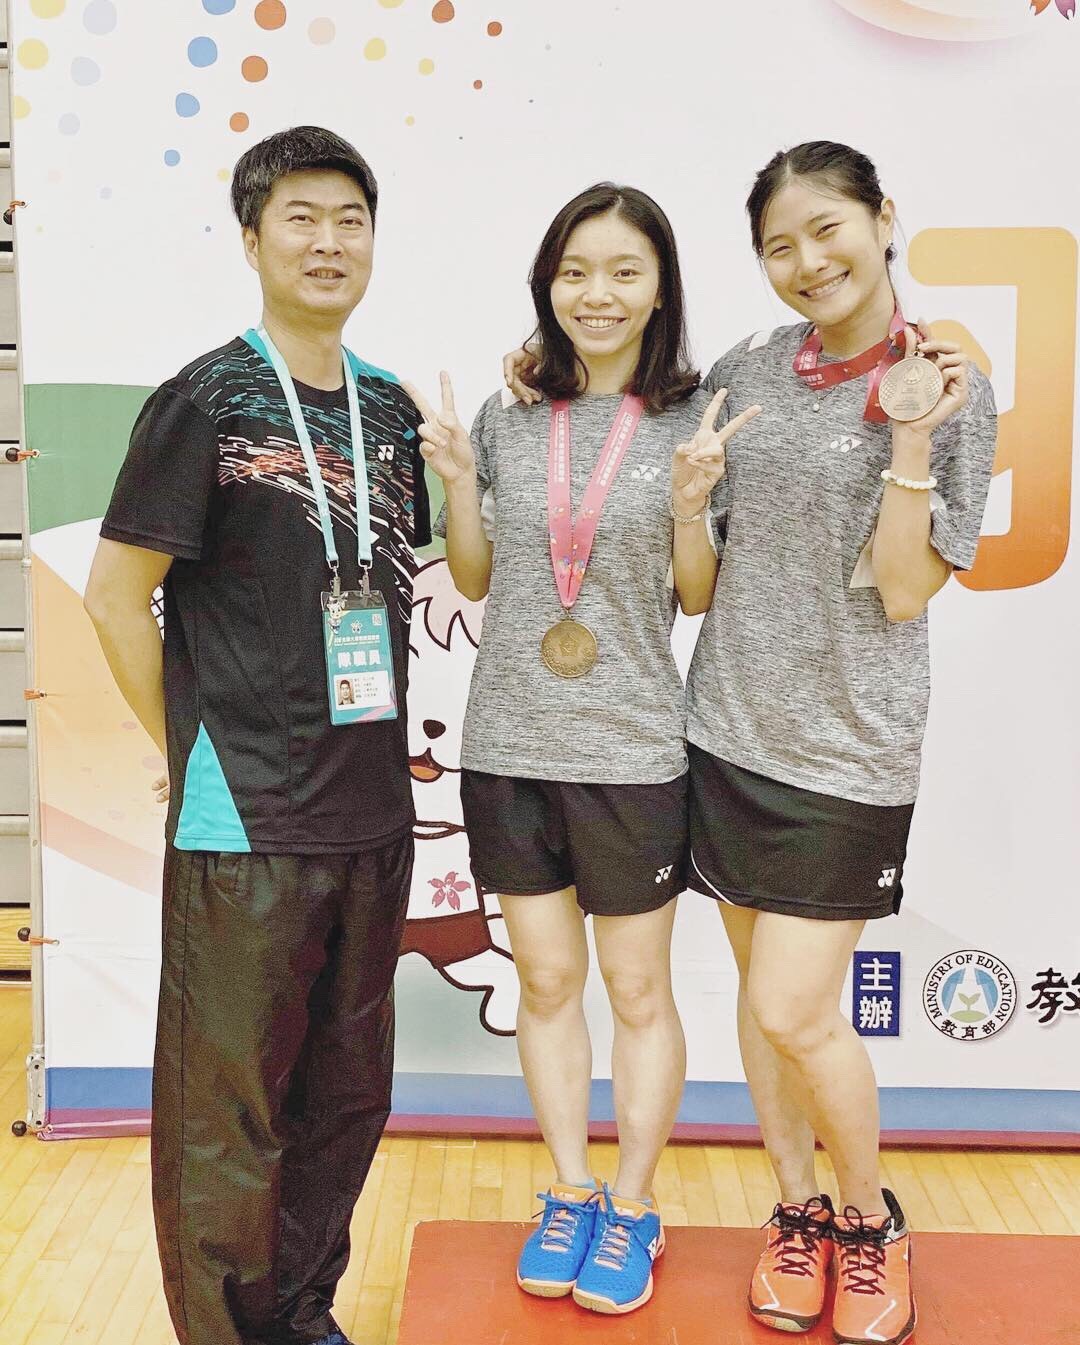 翁子凌(右)獲2019全國全國大專校院運動會羽球女雙第三名